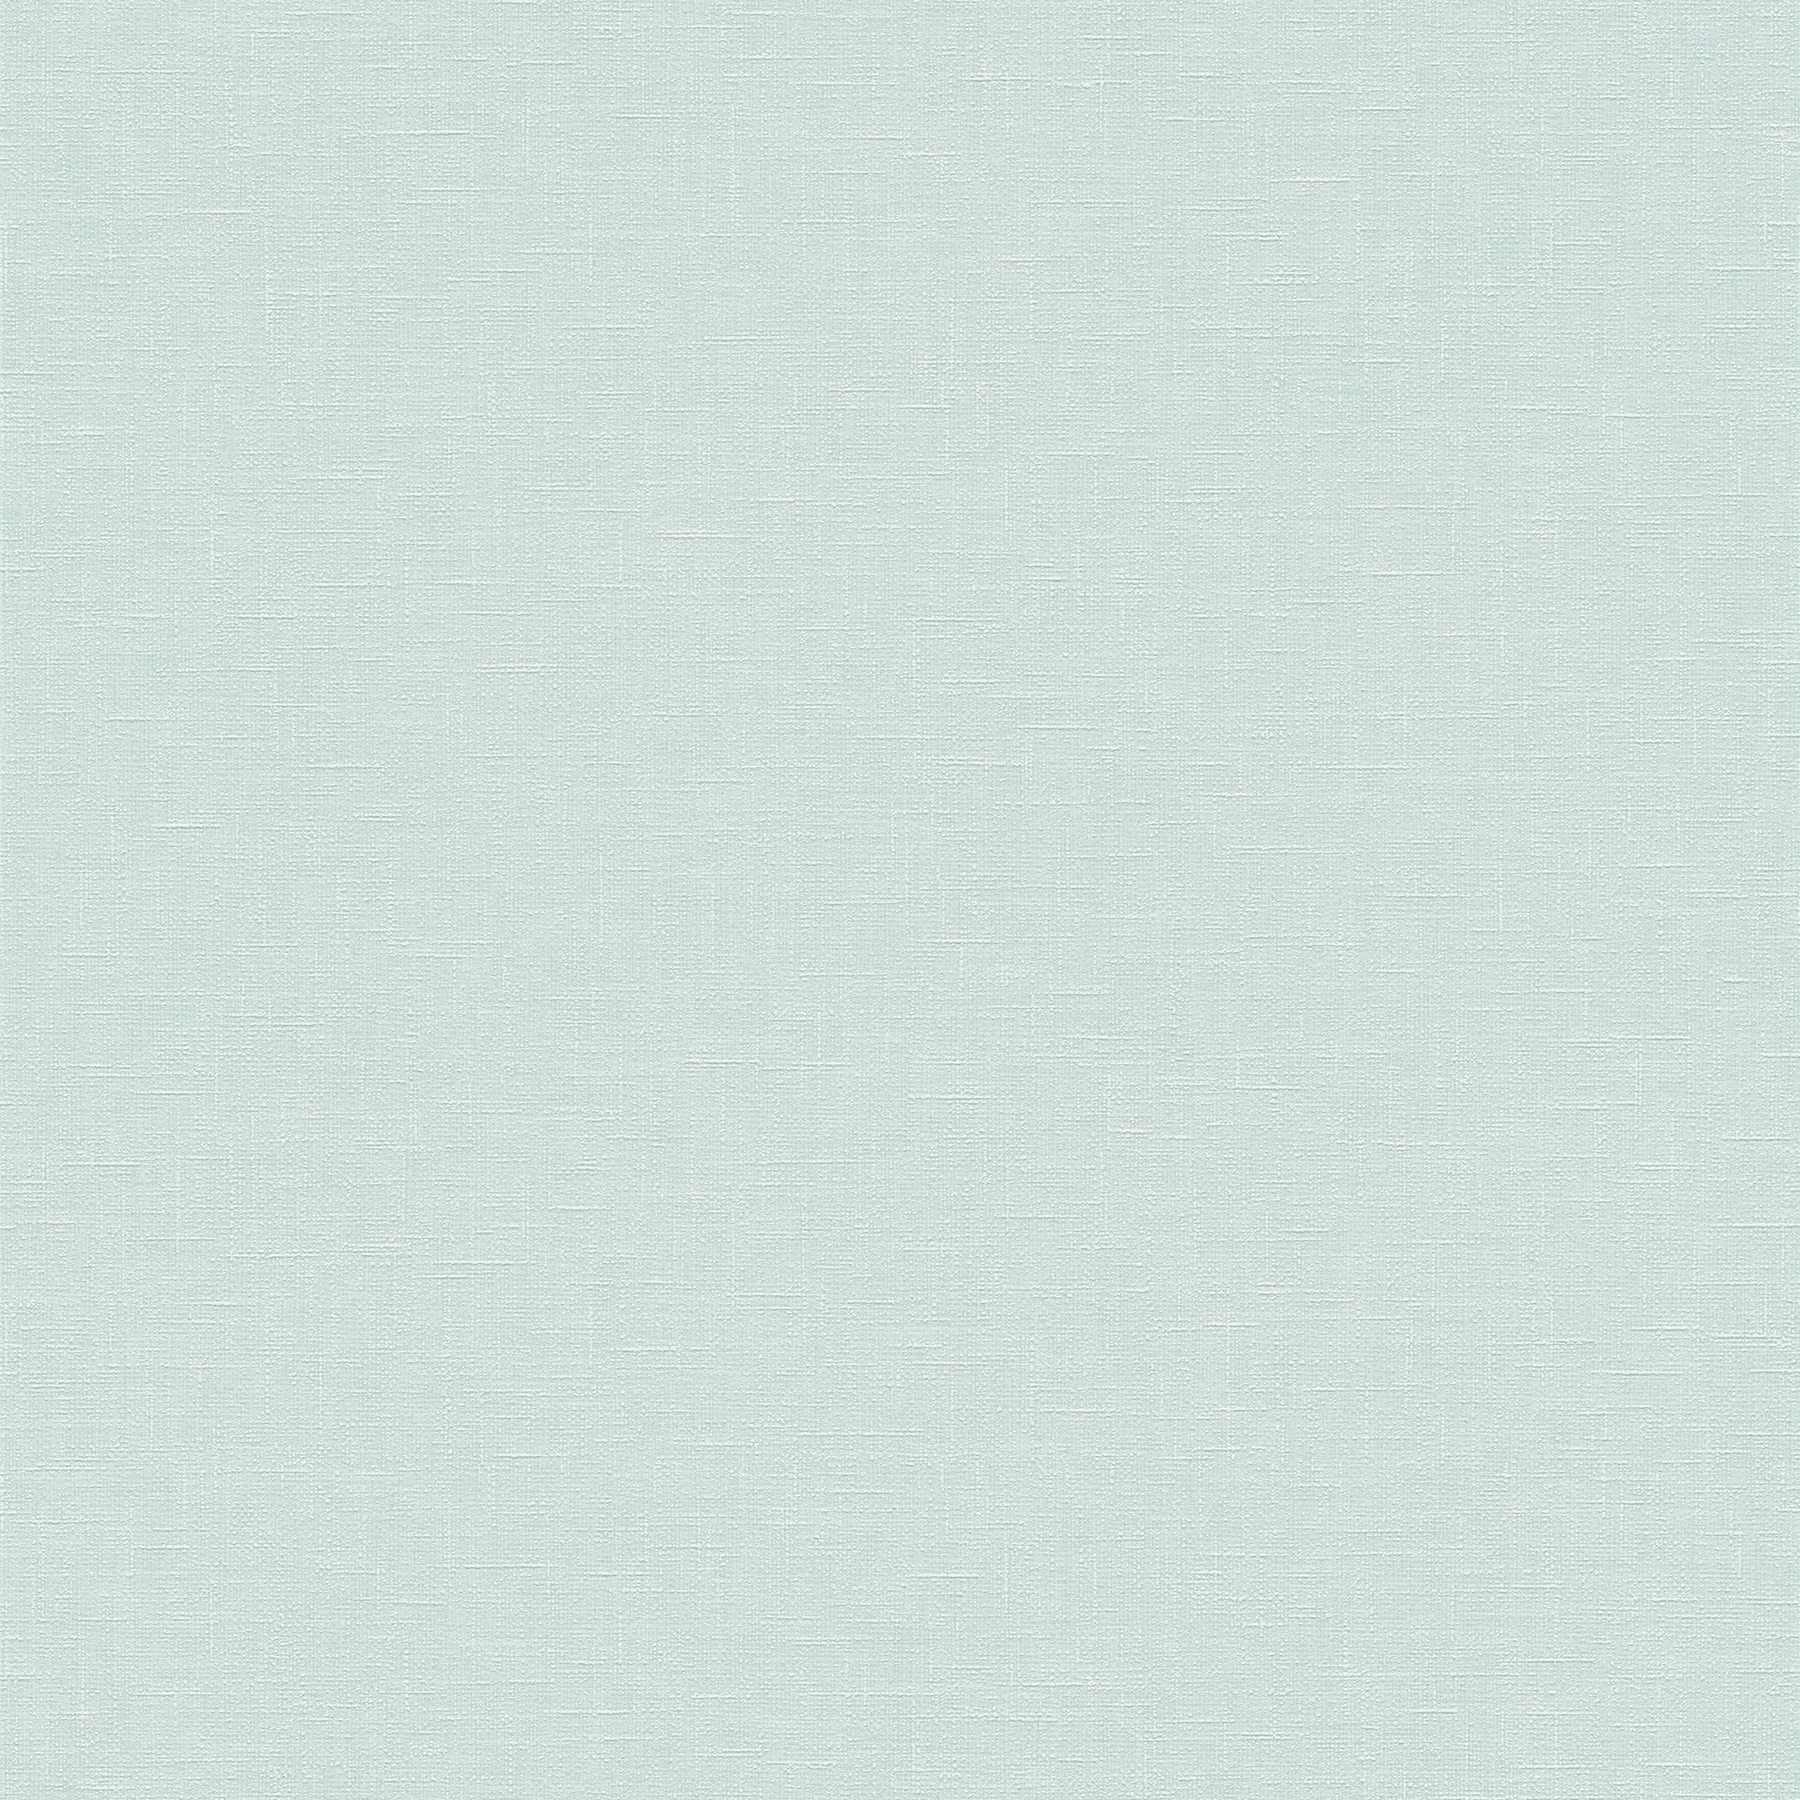 Papier peint turquoise clair blanc chiné avec structure textile
